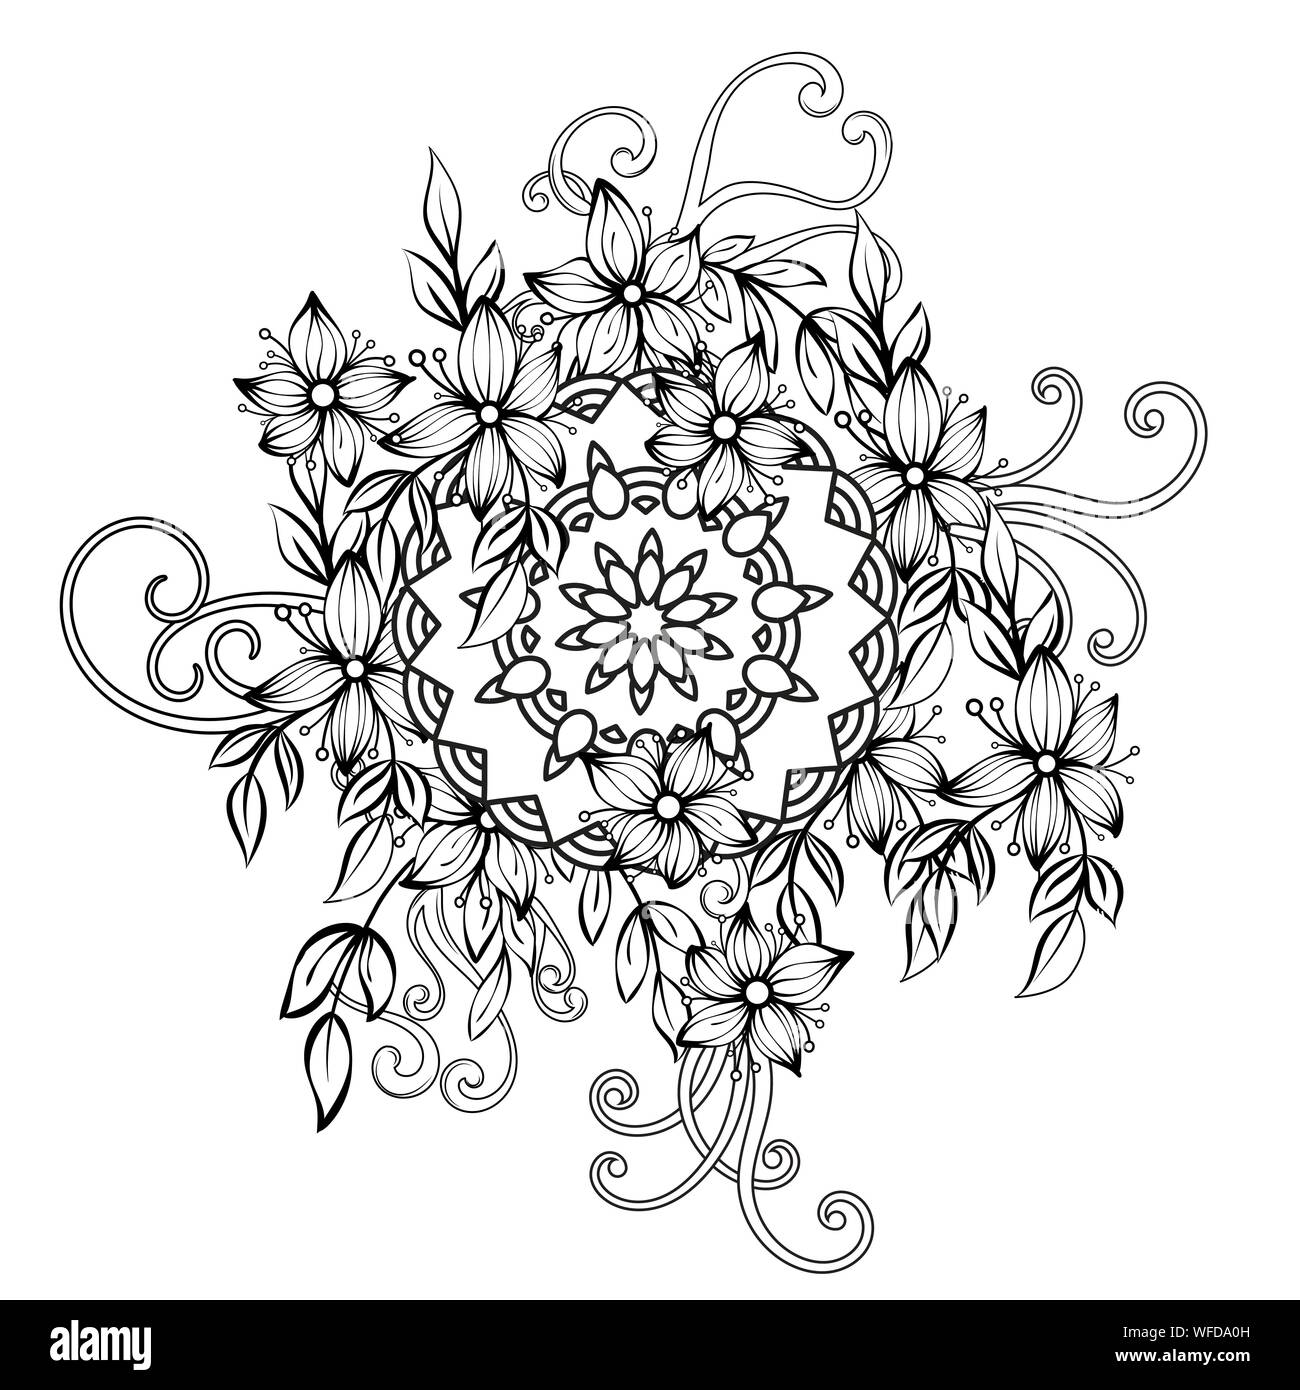 Coloriage Adulte Mandalas et Formes Géométriques Anti Stress: Livre de  coloriage pour adultes comprenant mandala et motifs Floral, pages Entière à  colorier pour relaxation et tranquillité - Livre de c 